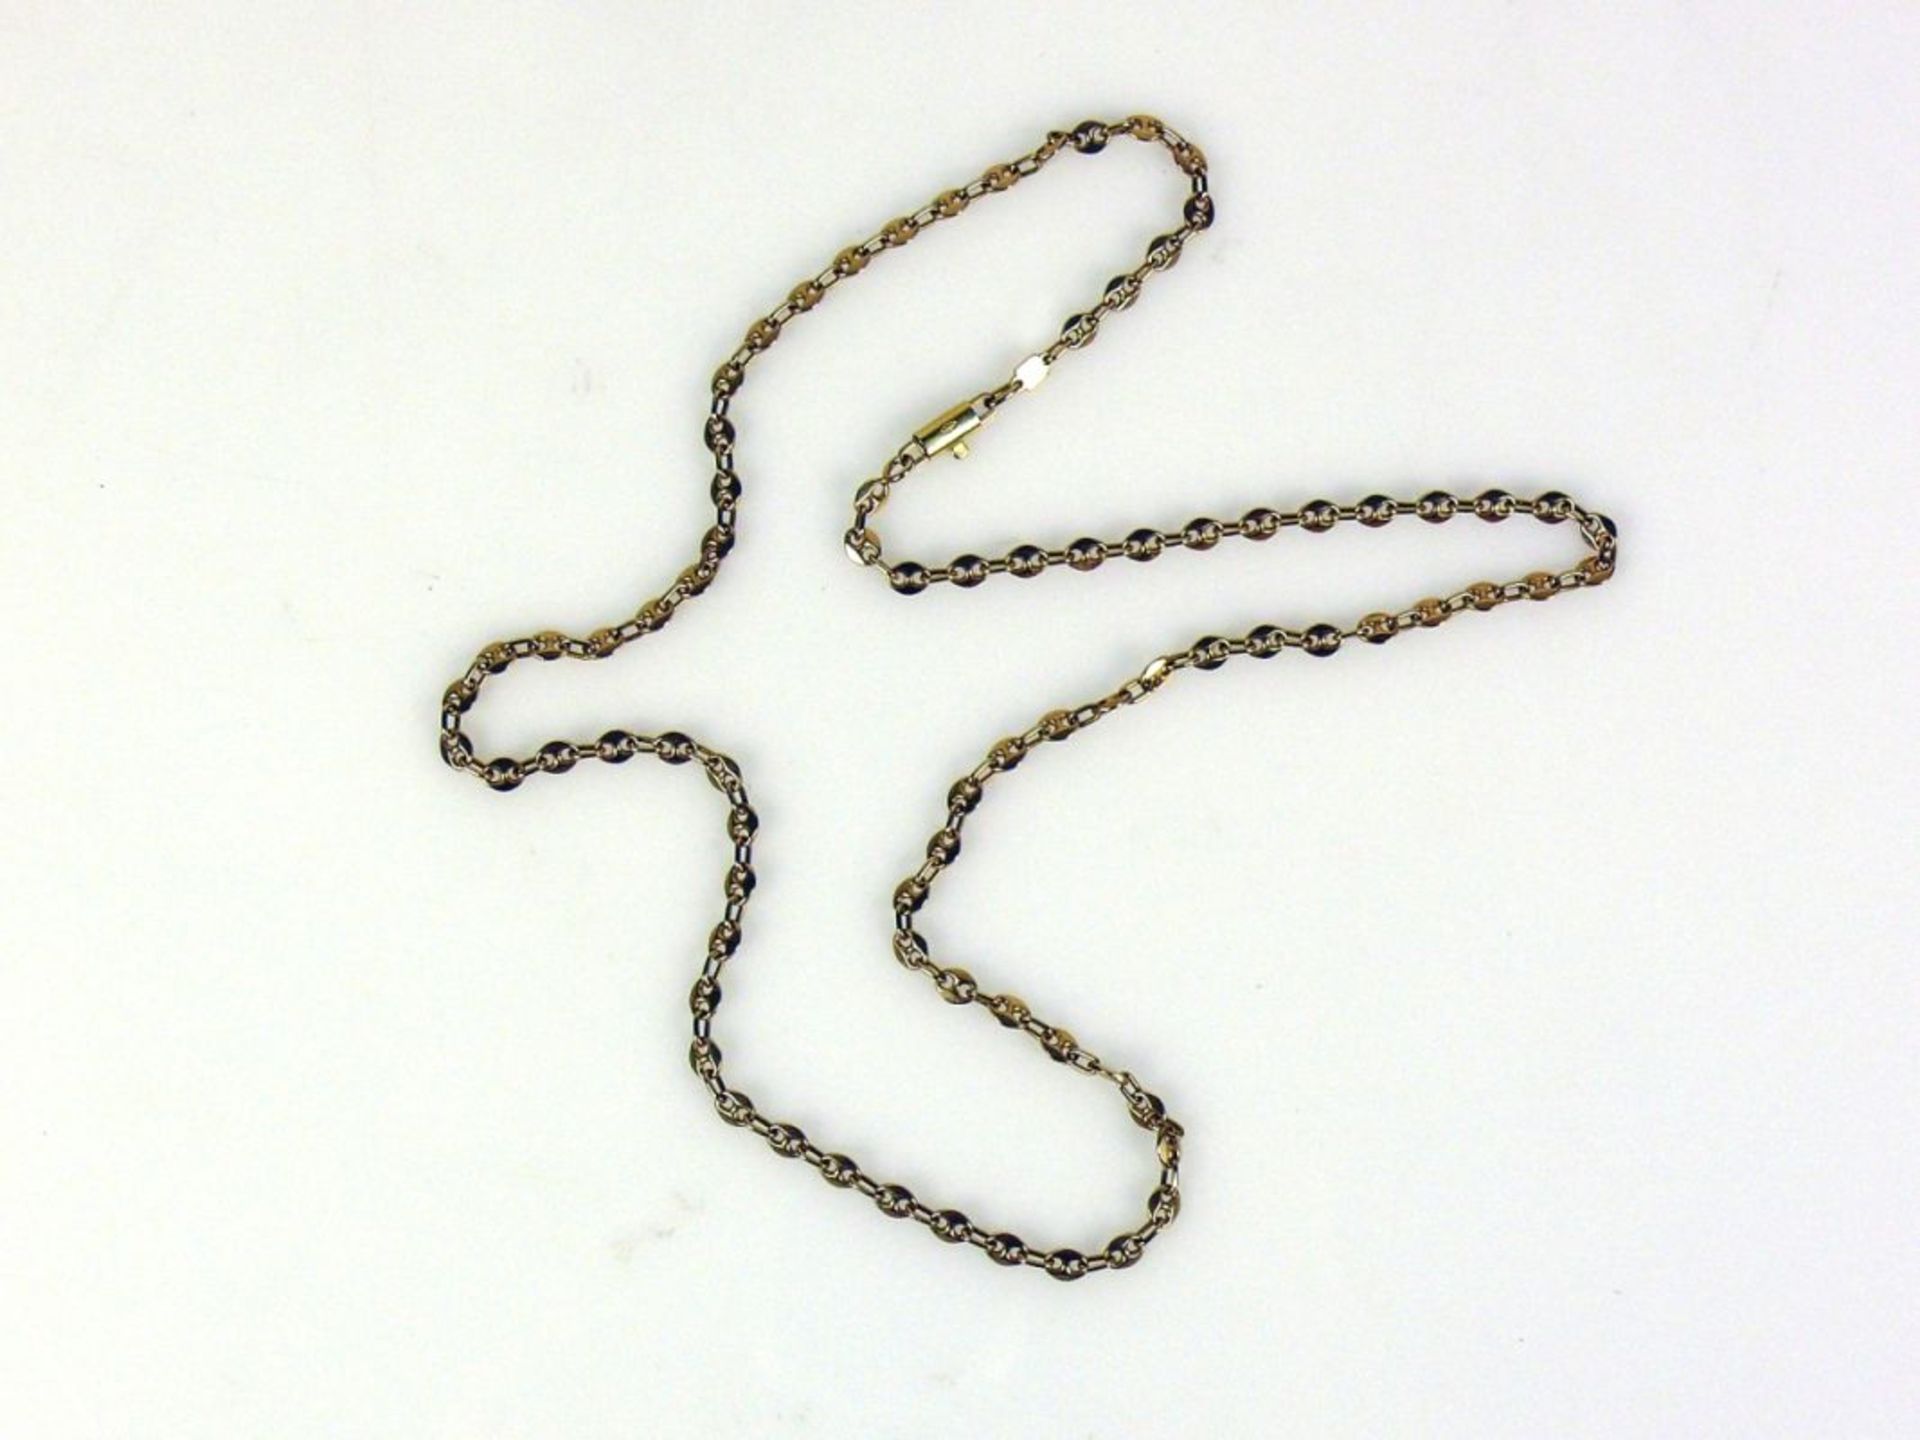 Halskette18ct GG; Gliederdekor; L: 60 cm; 21,5g